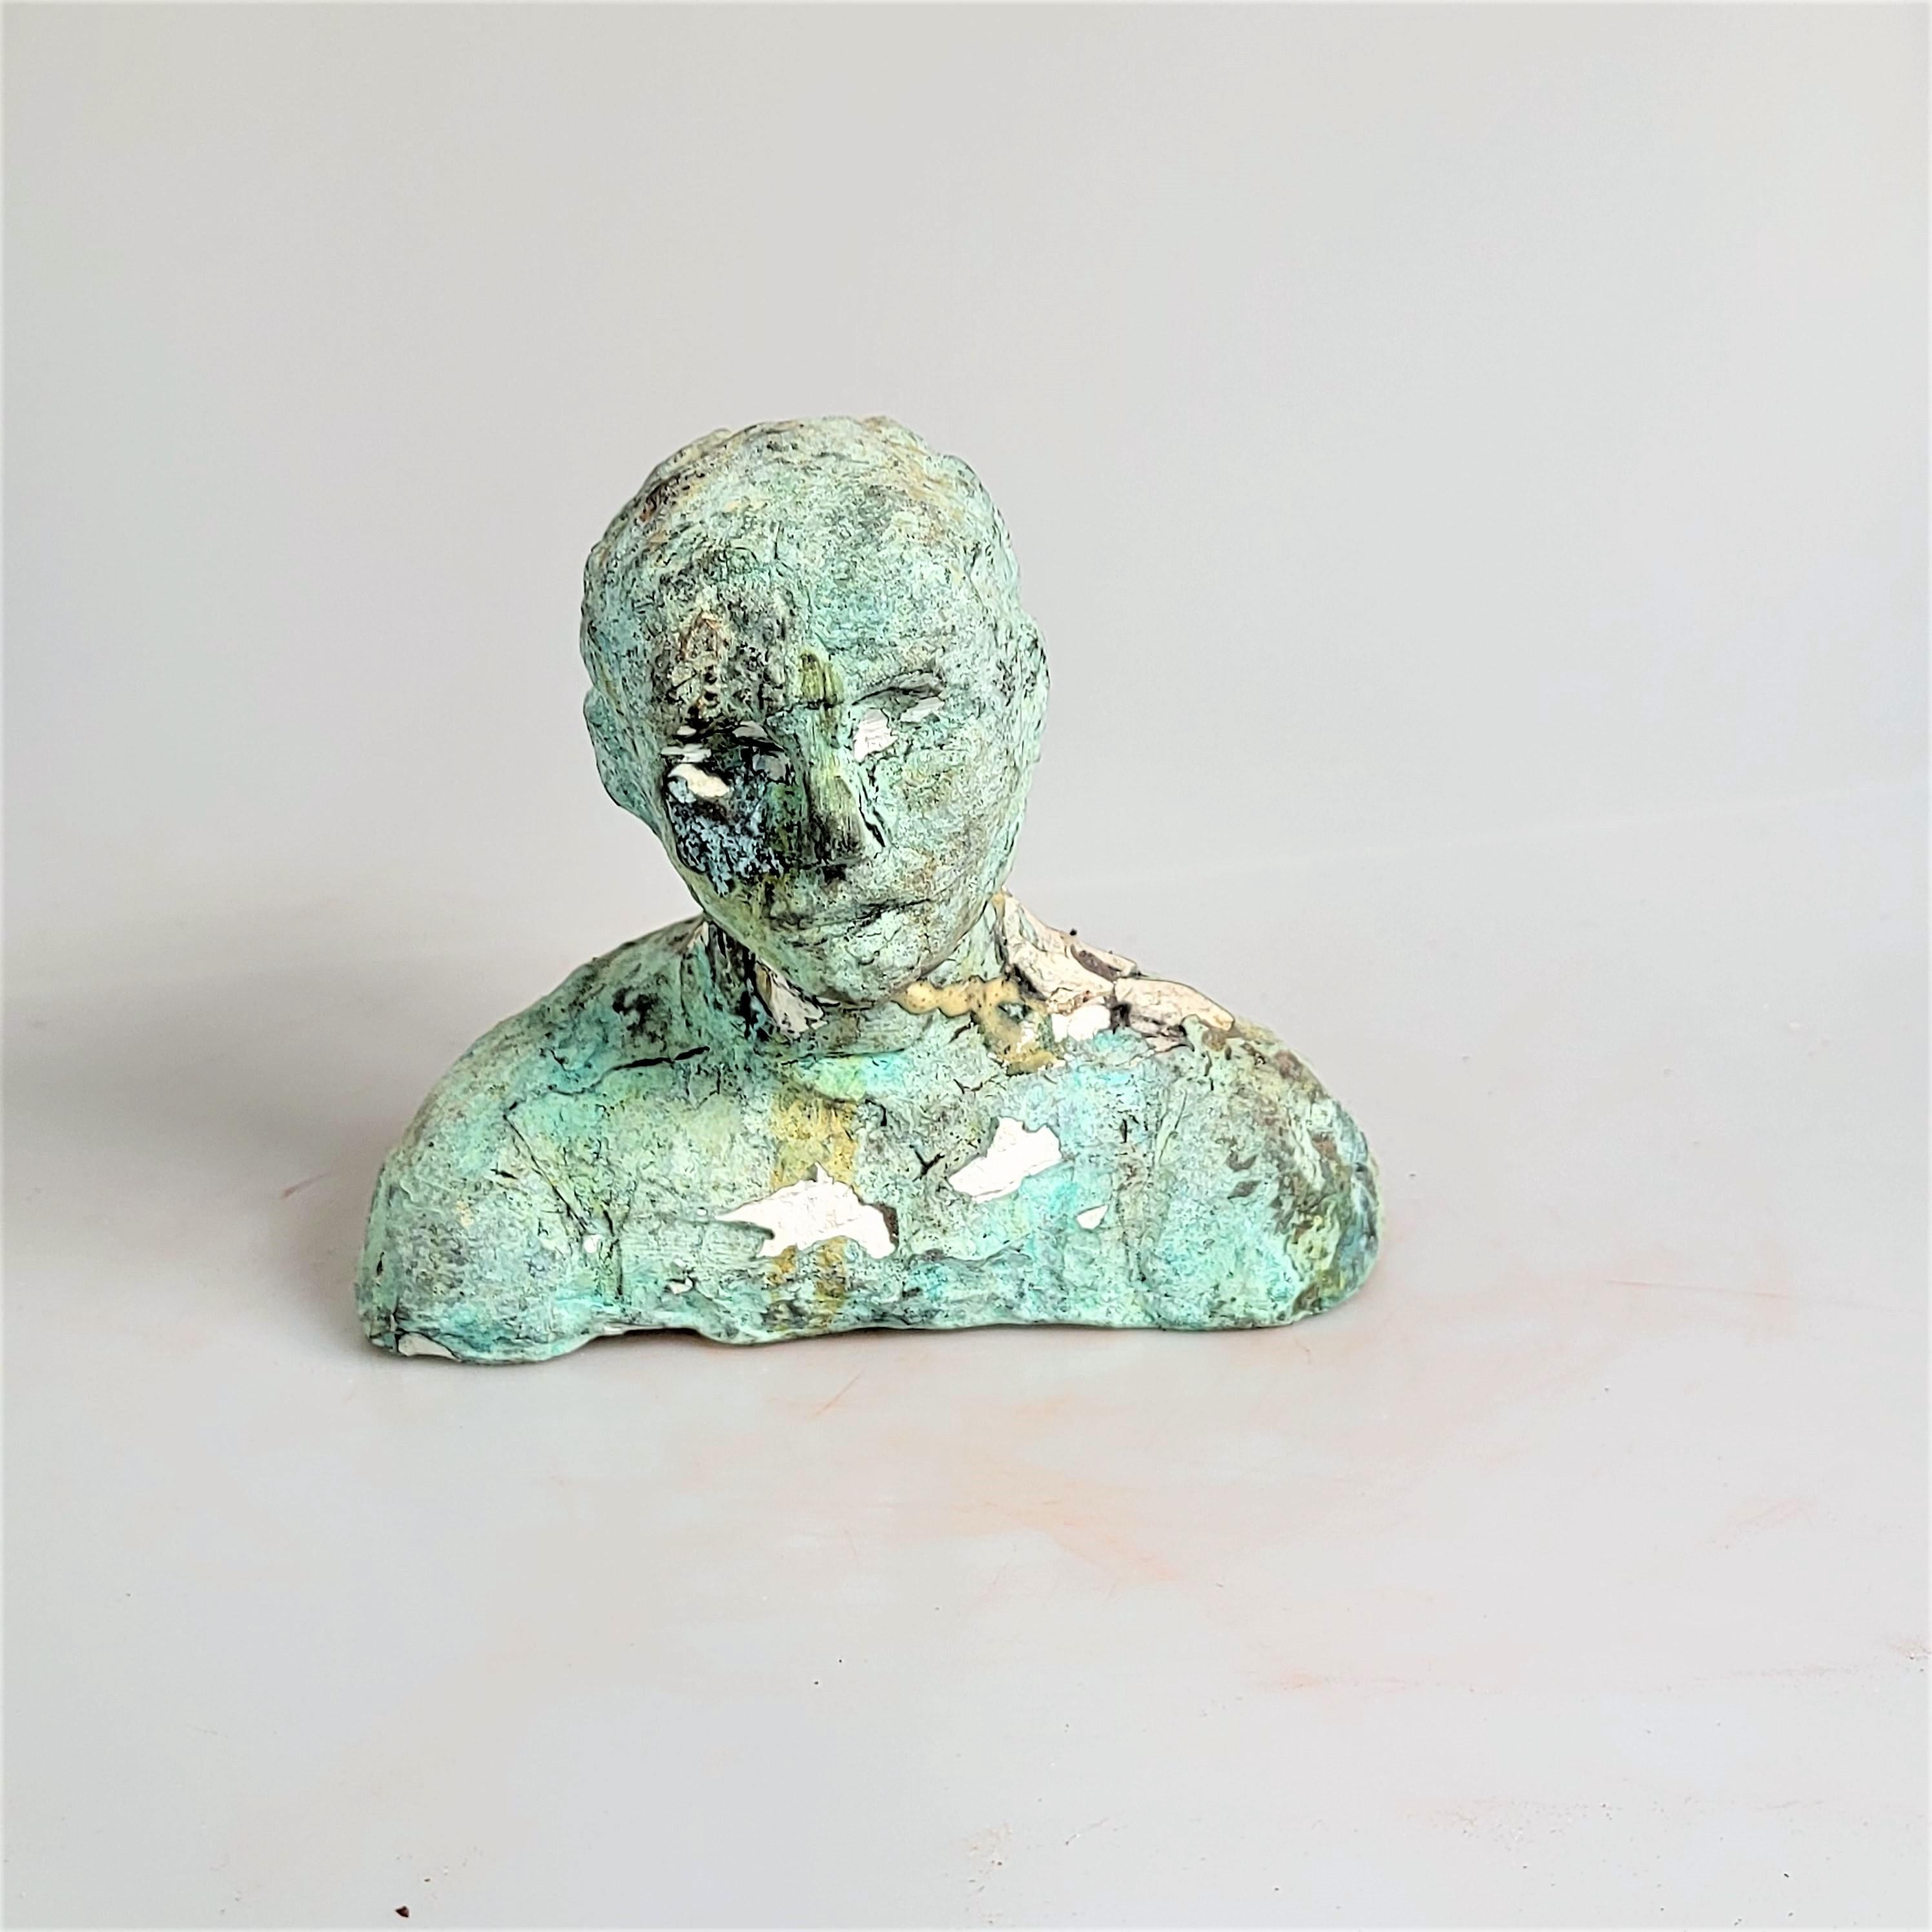 George Petrides Nude Sculpture - "Rebecca, A Dancer" Figurative Portrait Sculpture, Green, White